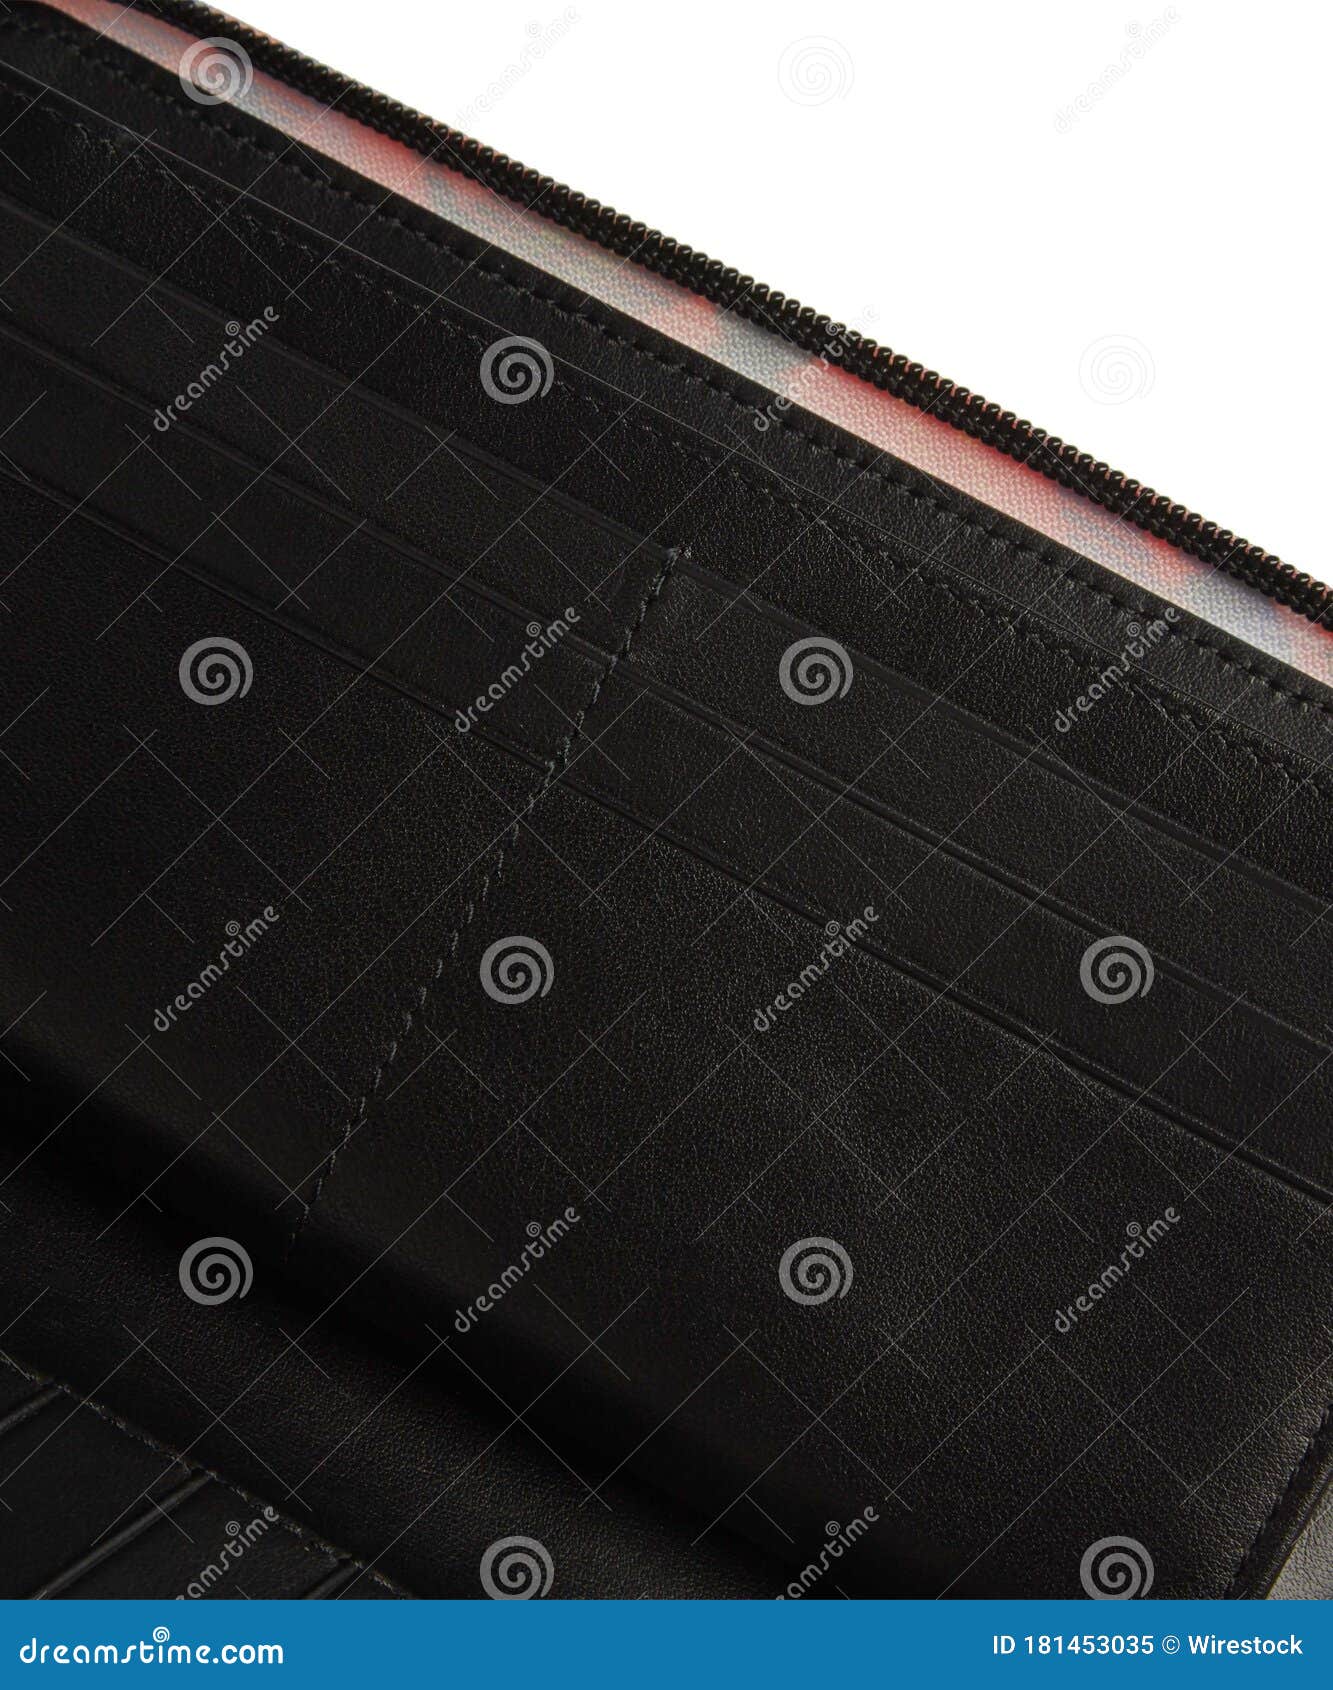 A closeup shot of the inner pockets of an open black wallet